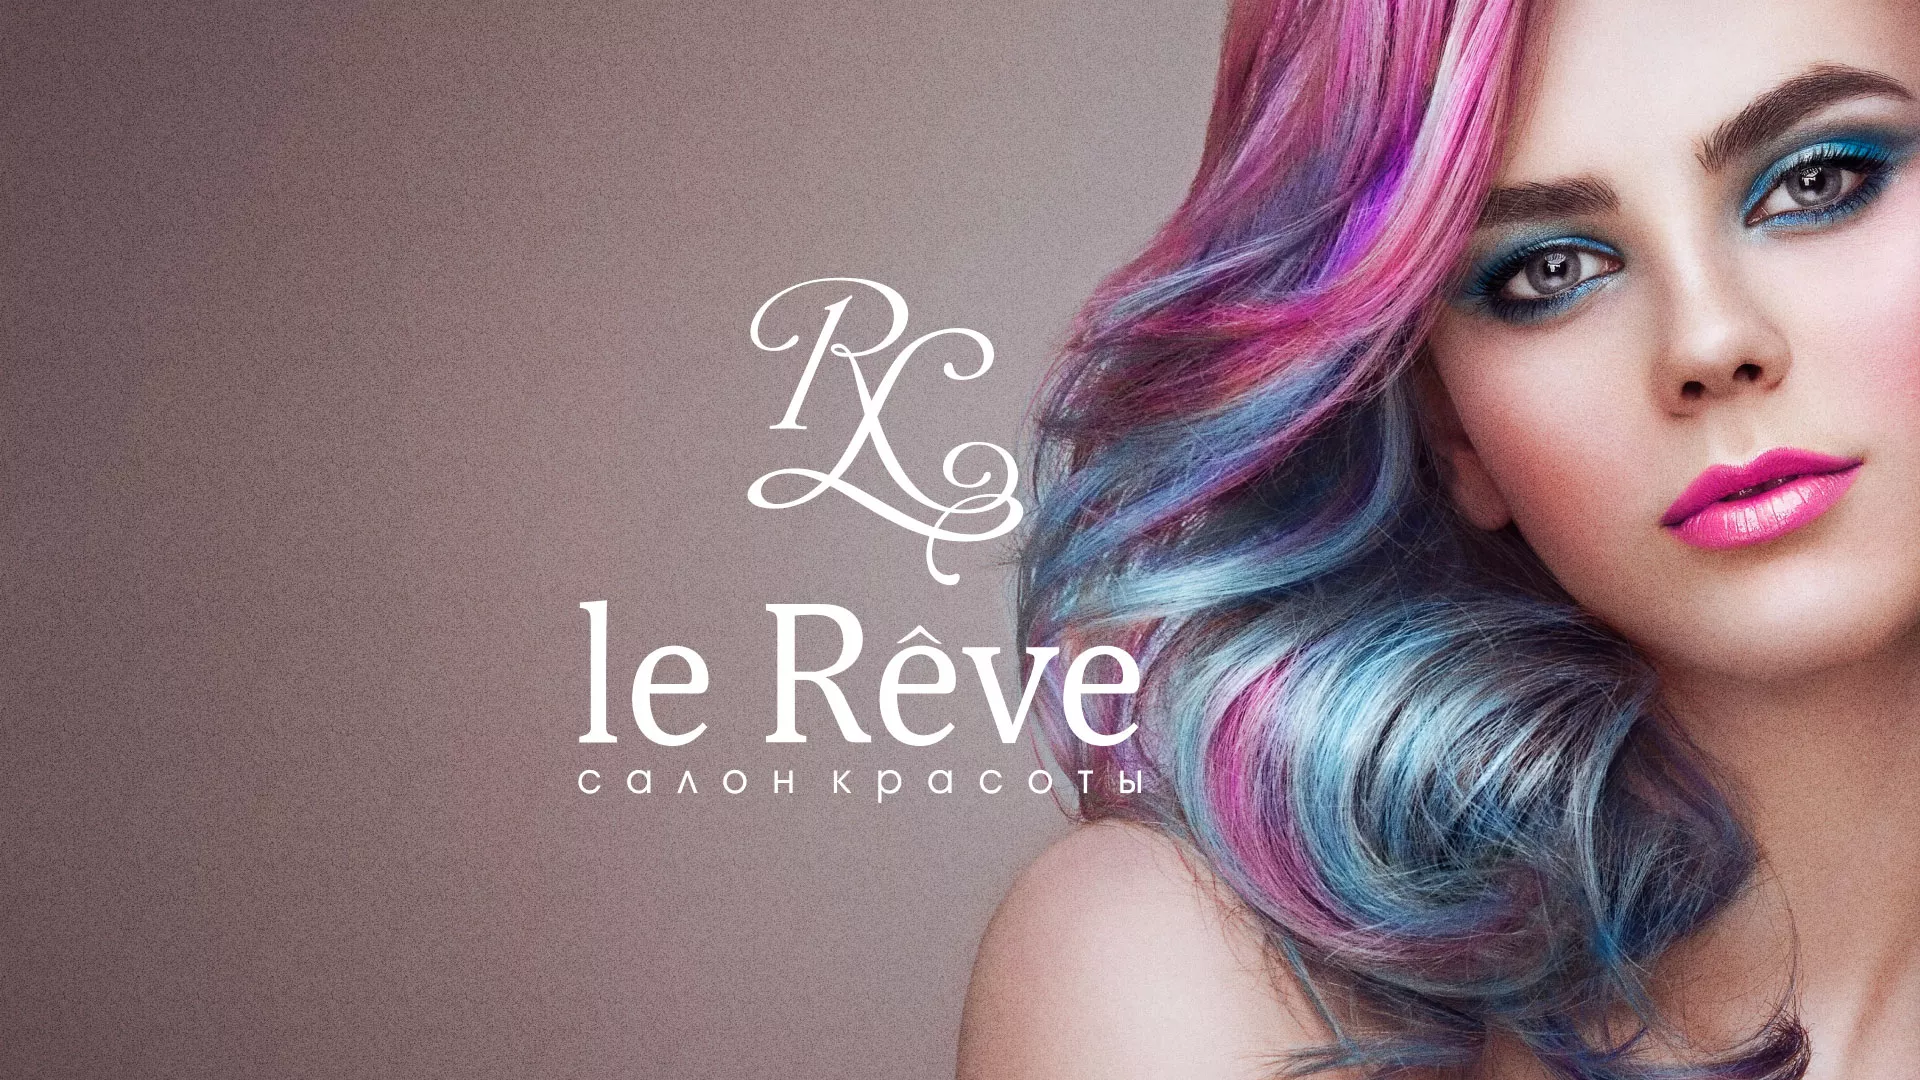 Создание сайта для салона красоты «Le Reve» в Краснослободске